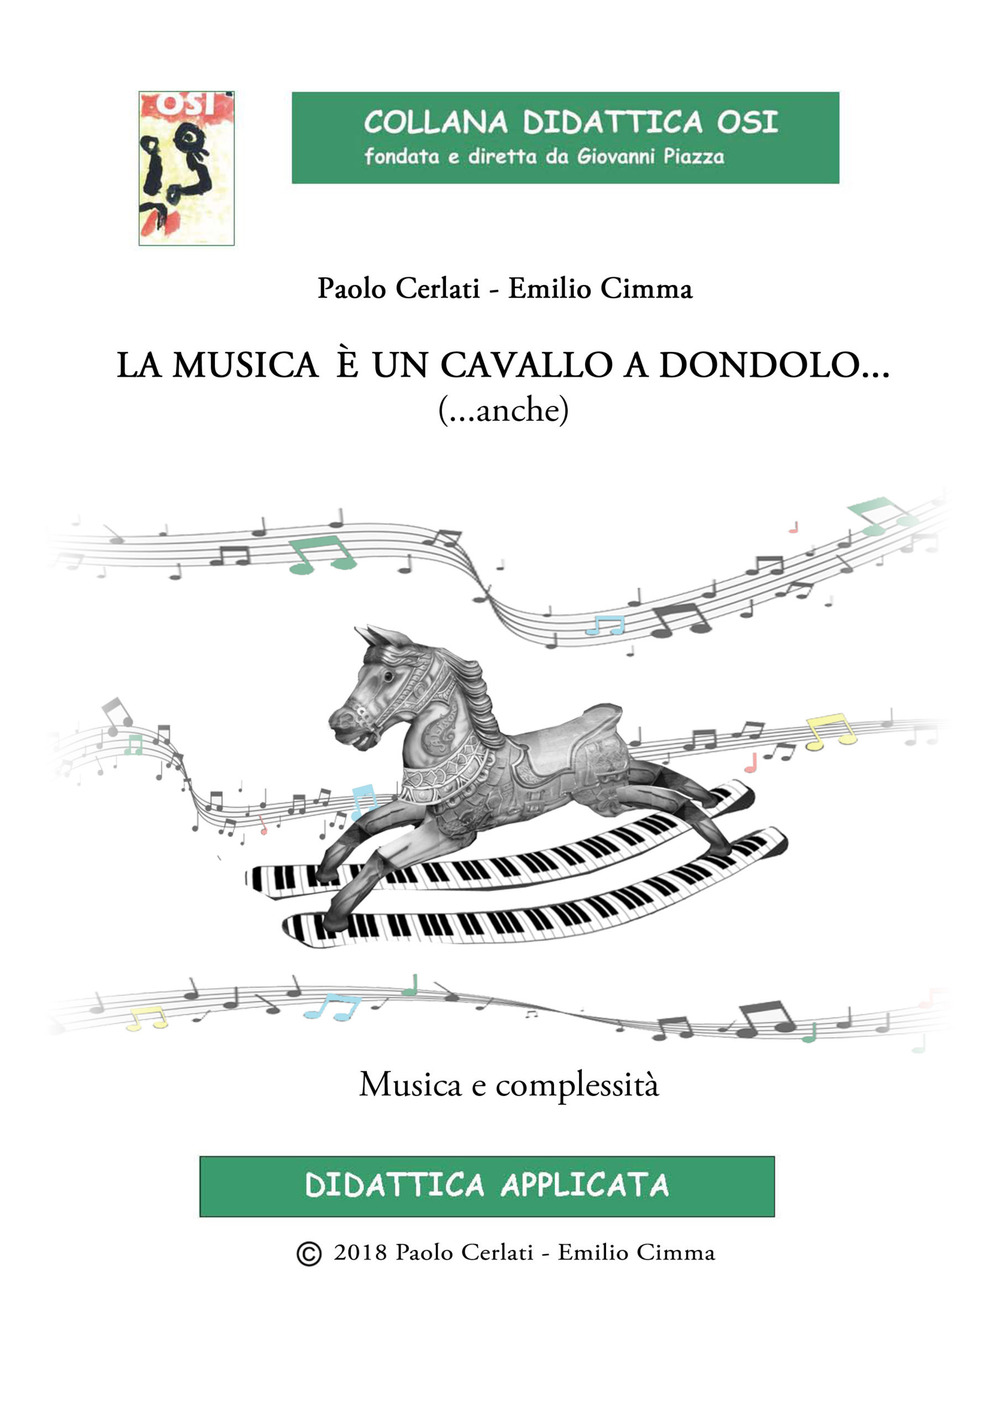 Libri Cimma Emilio / Cerlati Paolo - La Musica E Un Cavallo A Dondolo... (...Anche) Musica E Complessita. Ediz. Per La Scuola. Con CD-Audio NUOVO SIGILLATO, EDIZIONE DEL 01/01/2018 SUBITO DISPONIBILE